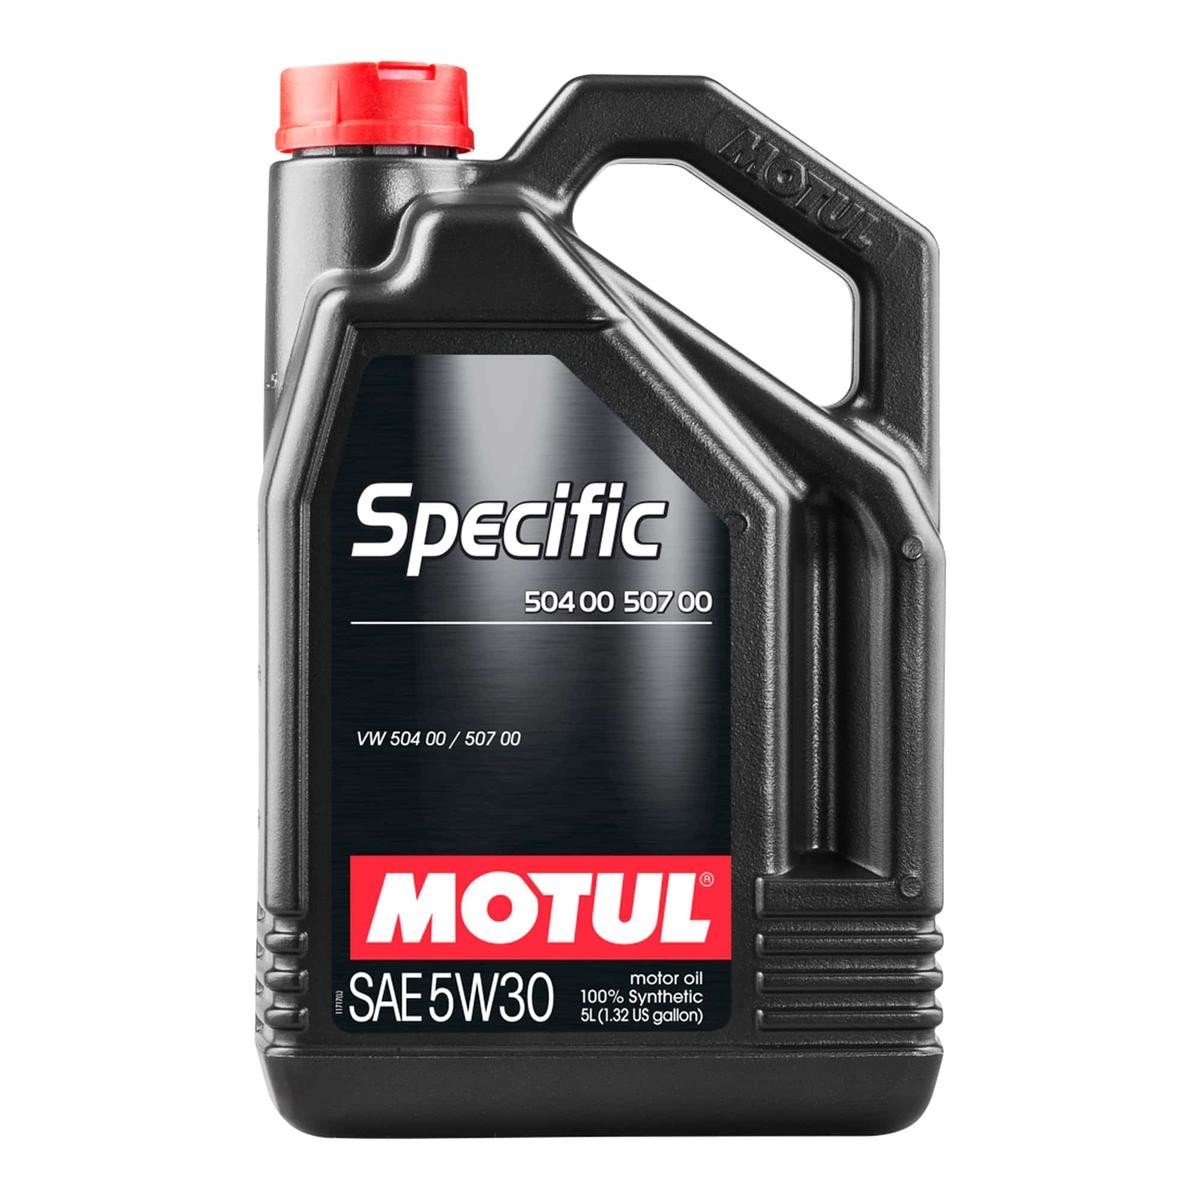 Car oil 5W-30 longlife diesel - 106375 MOTUL SPECIFIC, 504 00 507 00